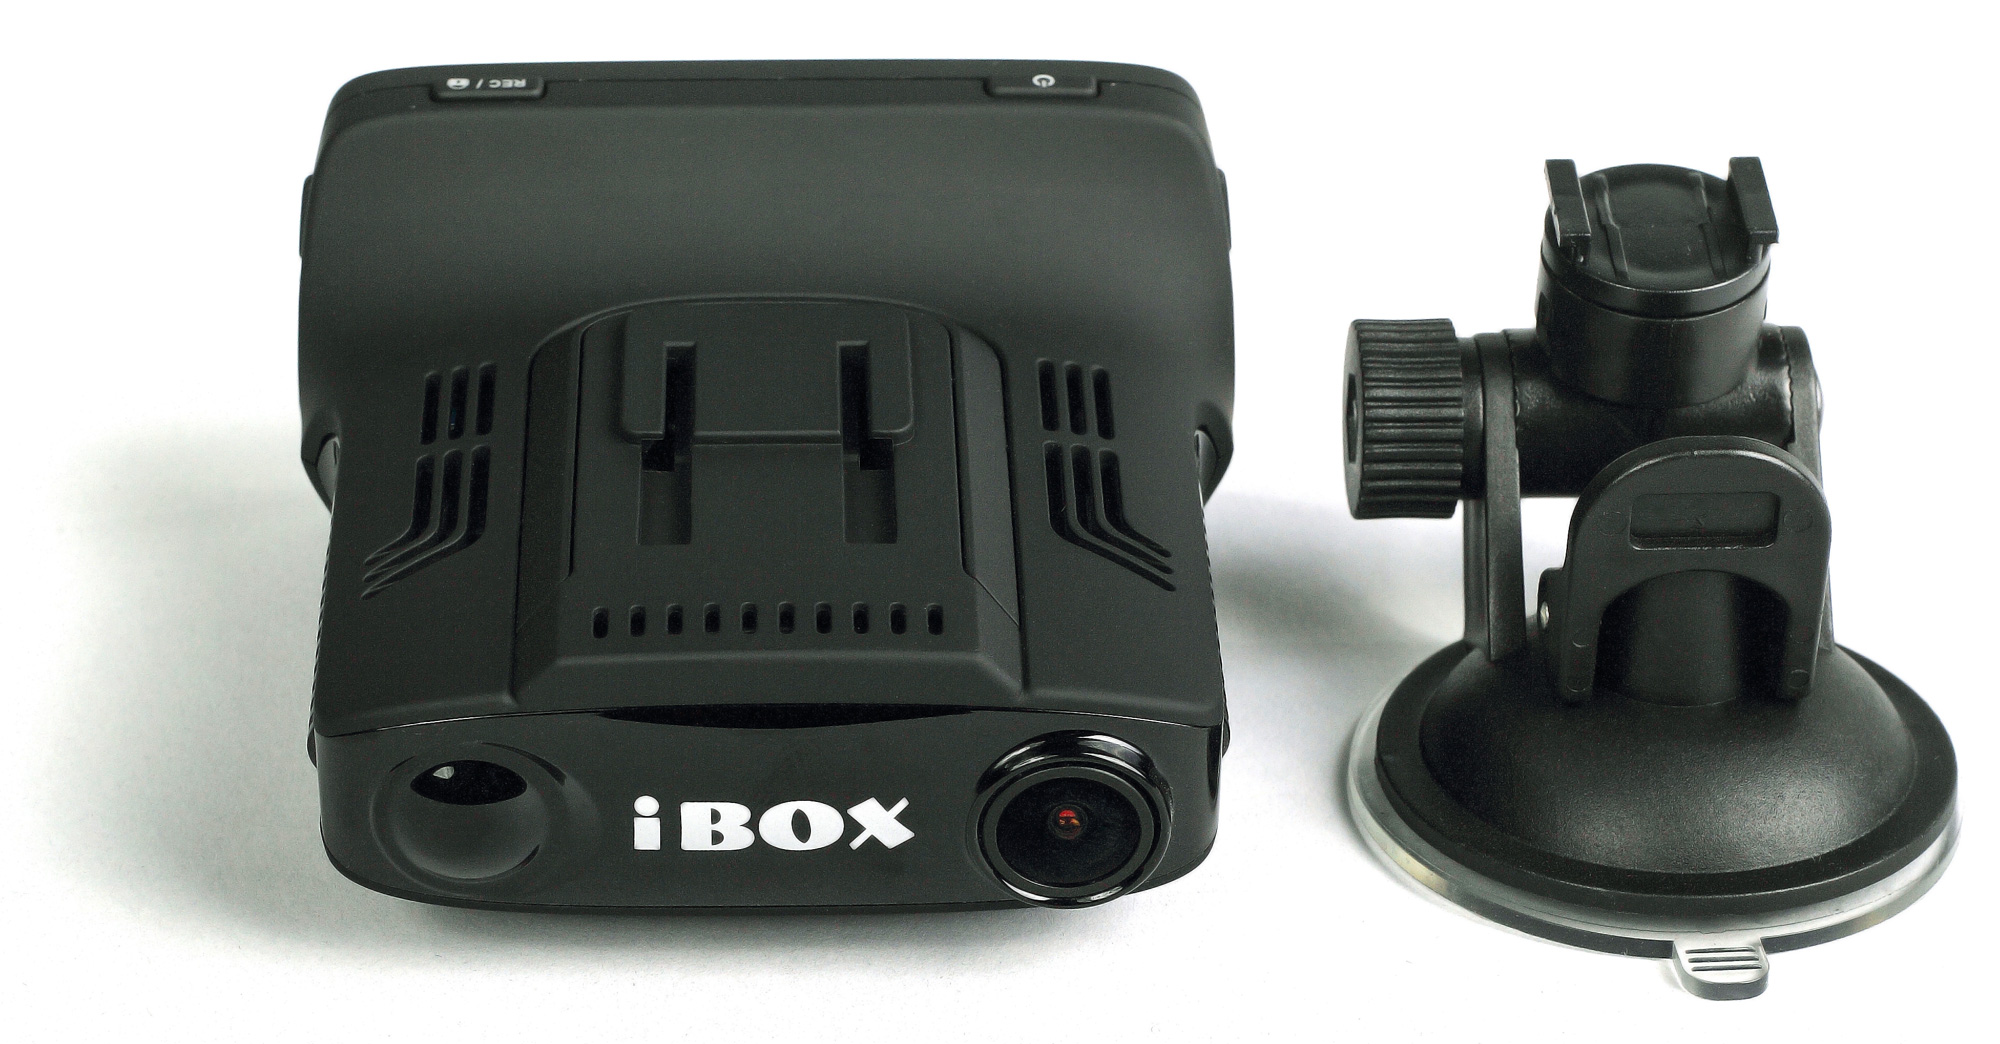 Регистратор айбокс. IBOX видеорегистратор f5. IBOX Combo f5. IBOX Combo f5 Signature. Видеорегистратор IBOX Combo f5.